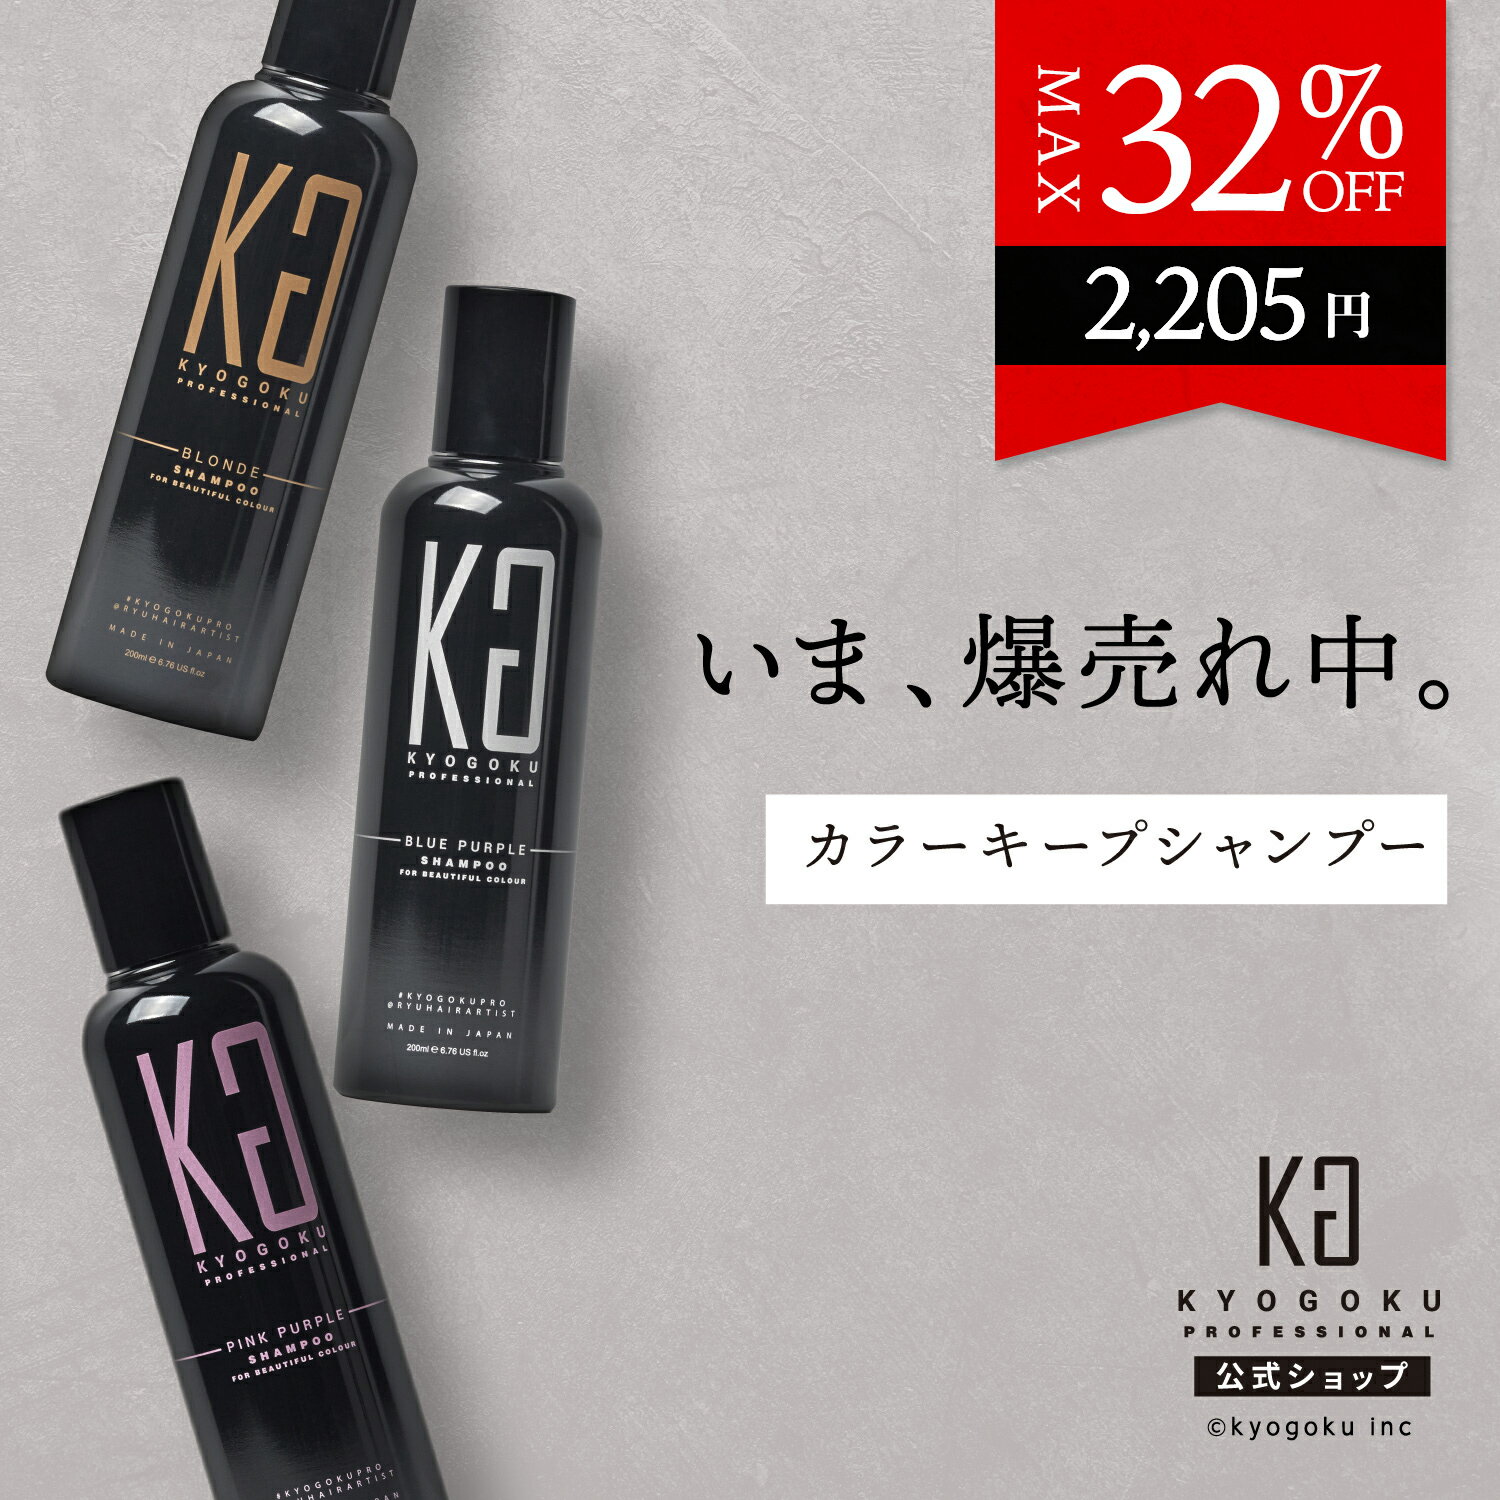 公式 クーポンで最大32%OFF 【 KYOGOKU 